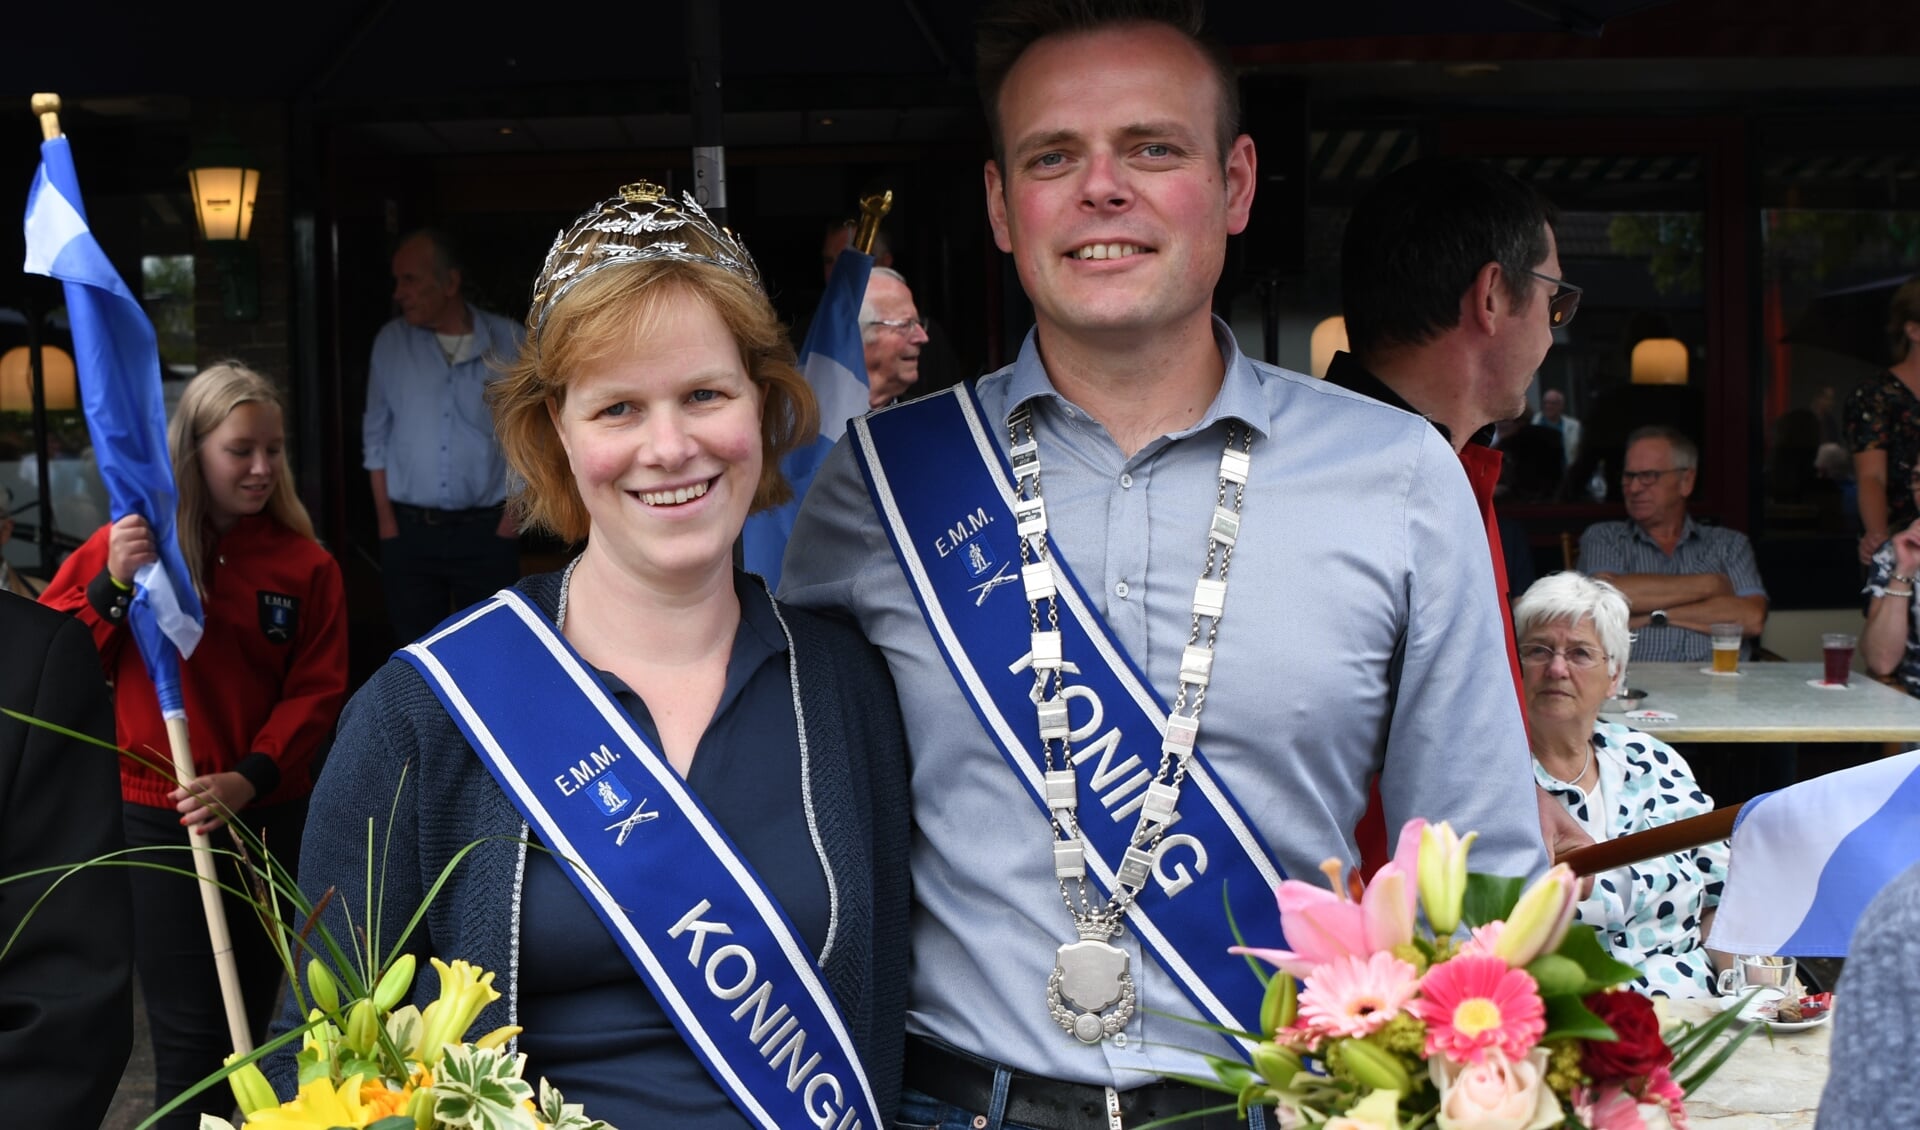 Koningspaar 2019 van EMM Hengelo: André en Maaike te Stroet. Foto: Achterhoekfoto.nl/Paul Harmelink